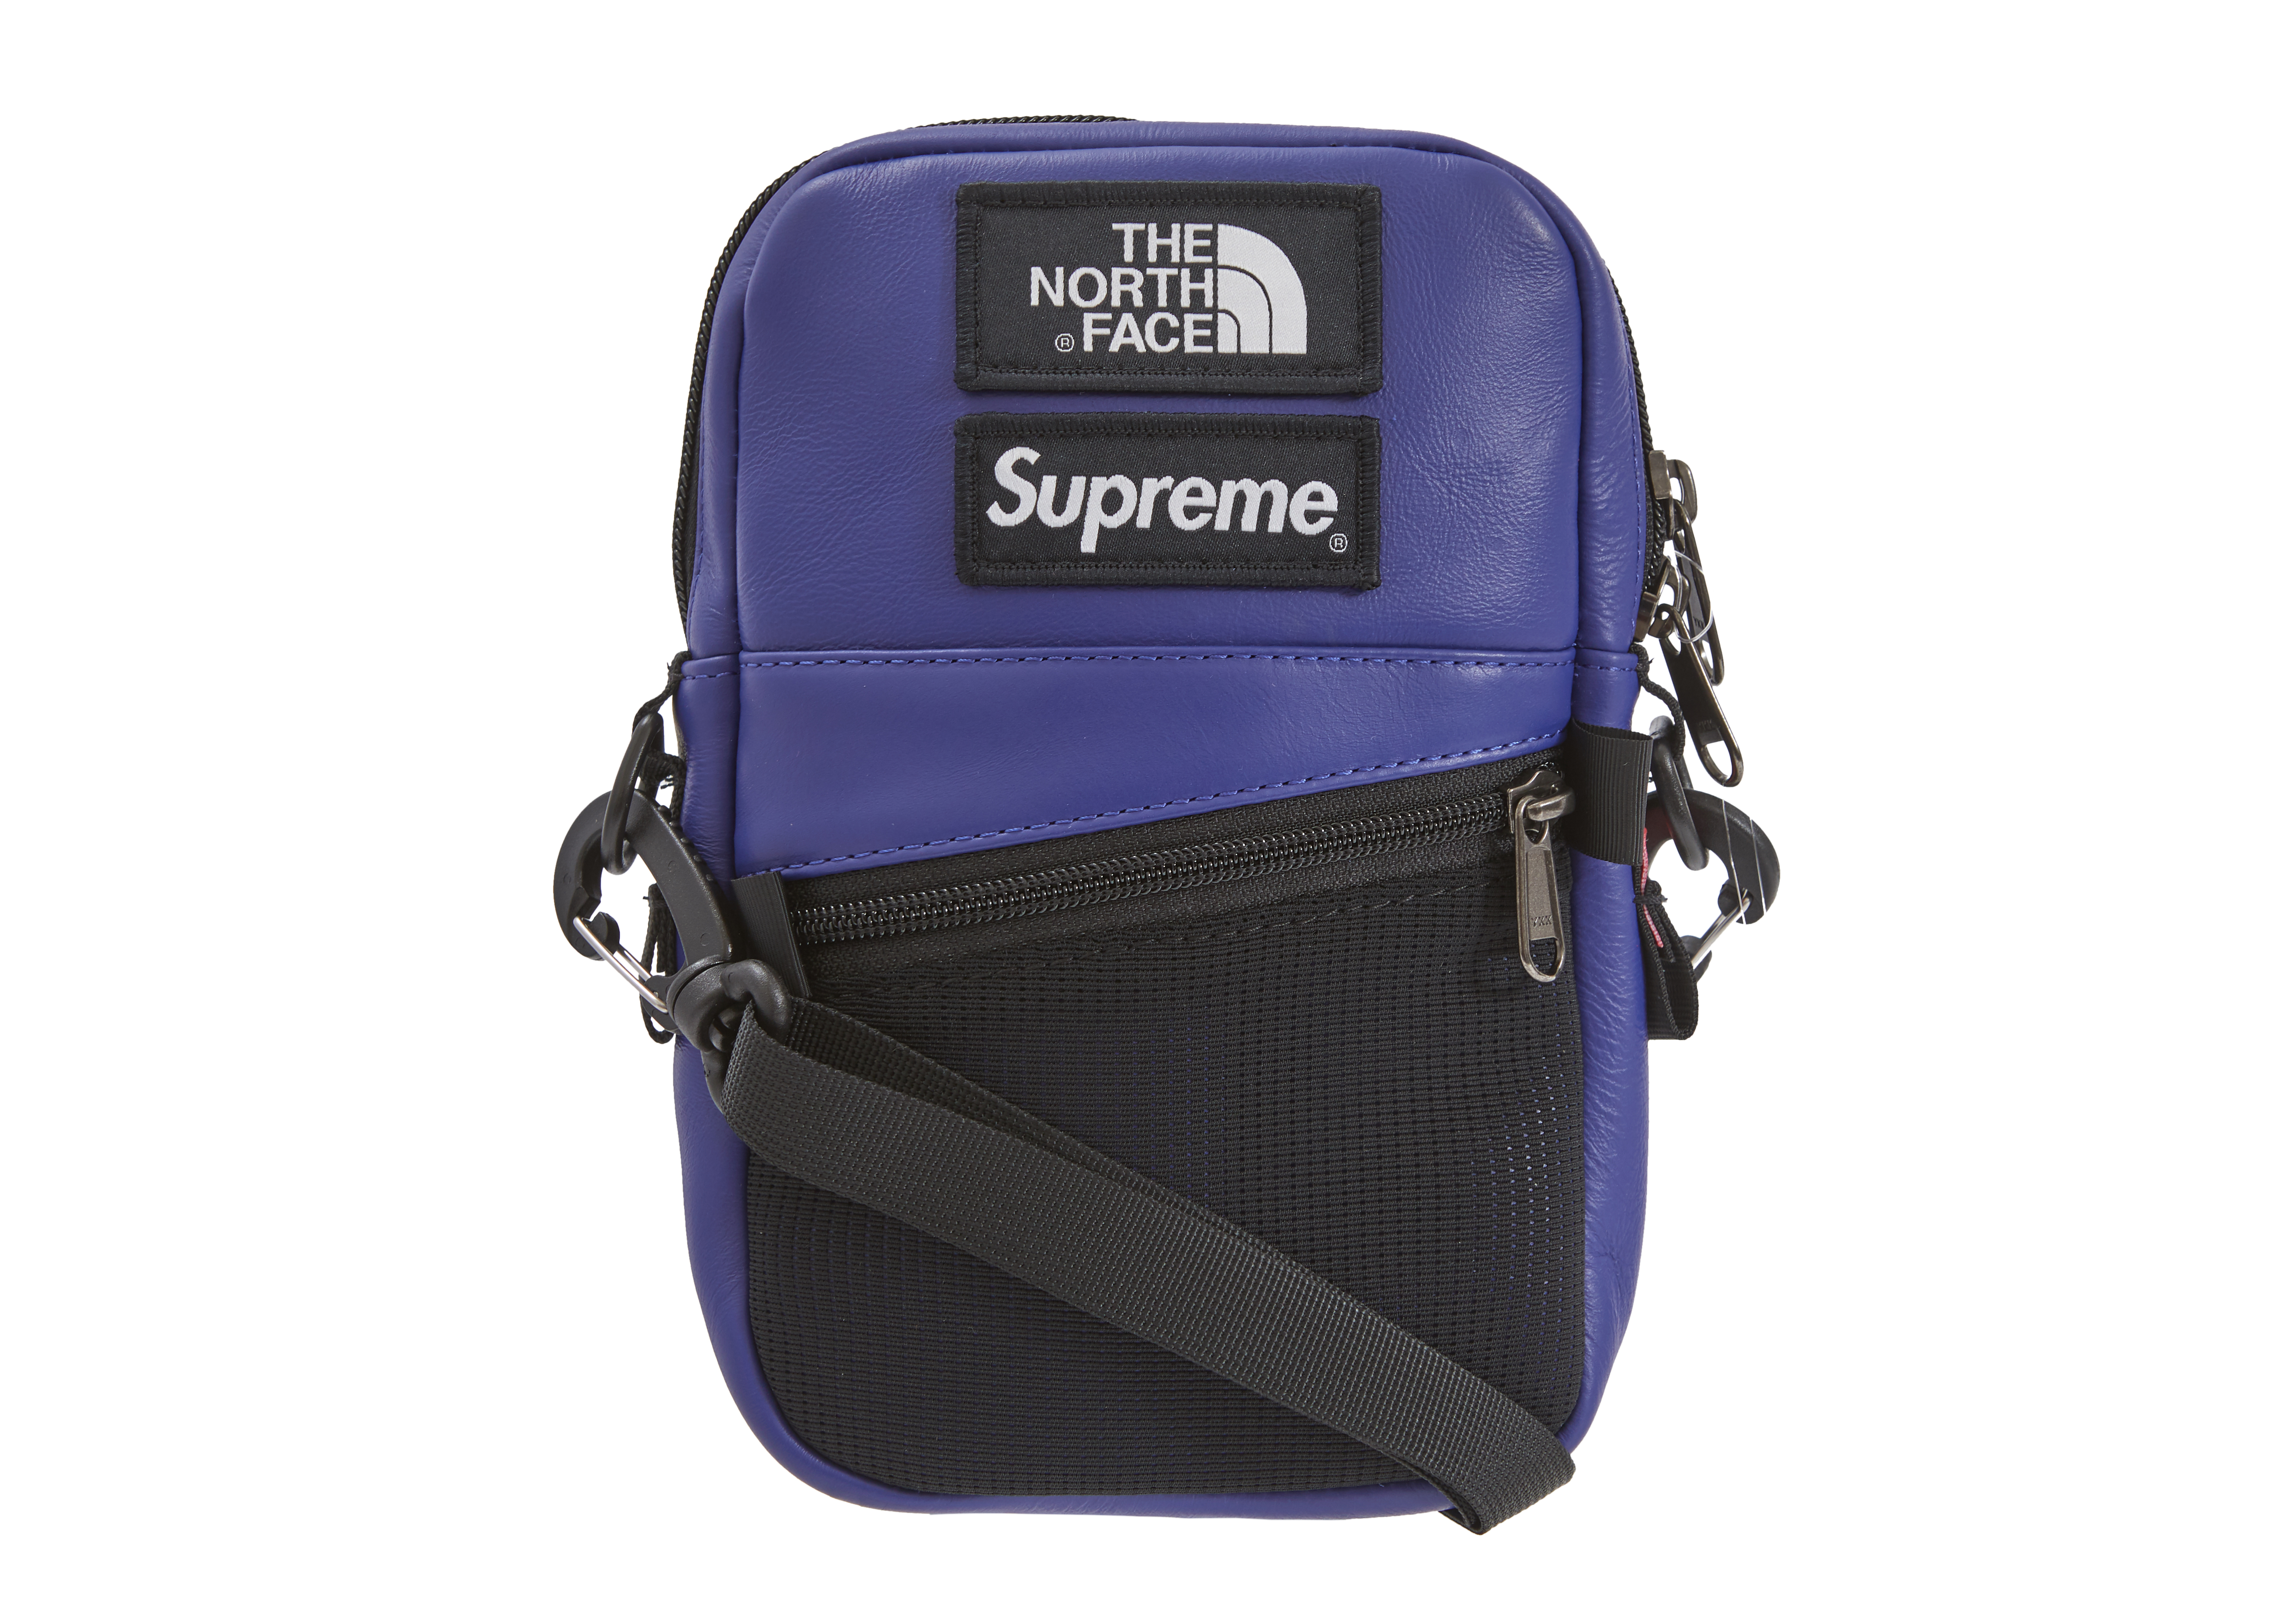 Supreme TNF Leather Shoulder Bag - rehda.com